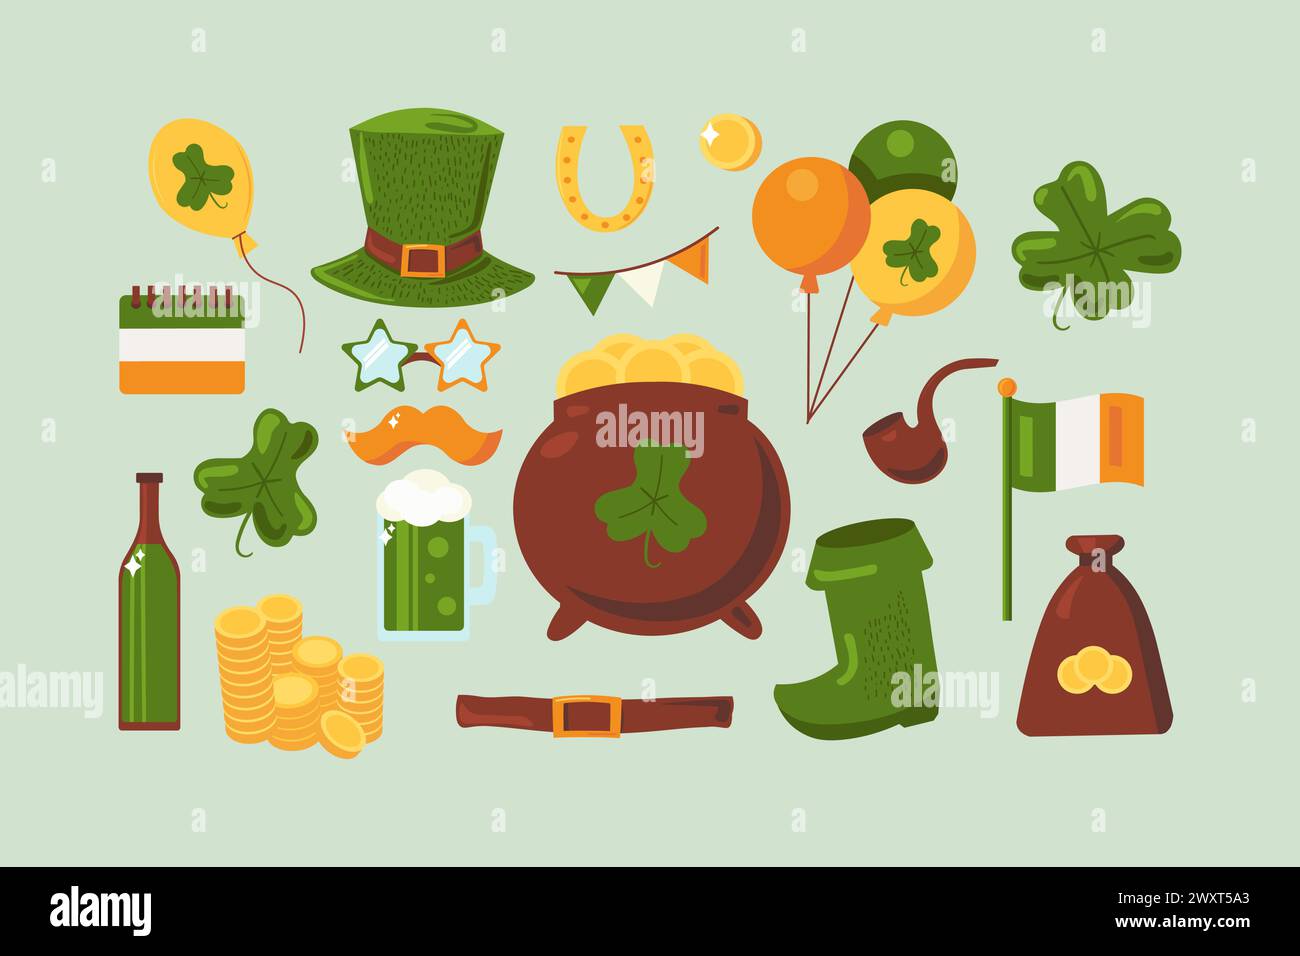 Vector Cartoon Happy Patrick's Day Set. Elementi isolati in primavera nei colori della bandiera irlandese Illustrazione Vettoriale